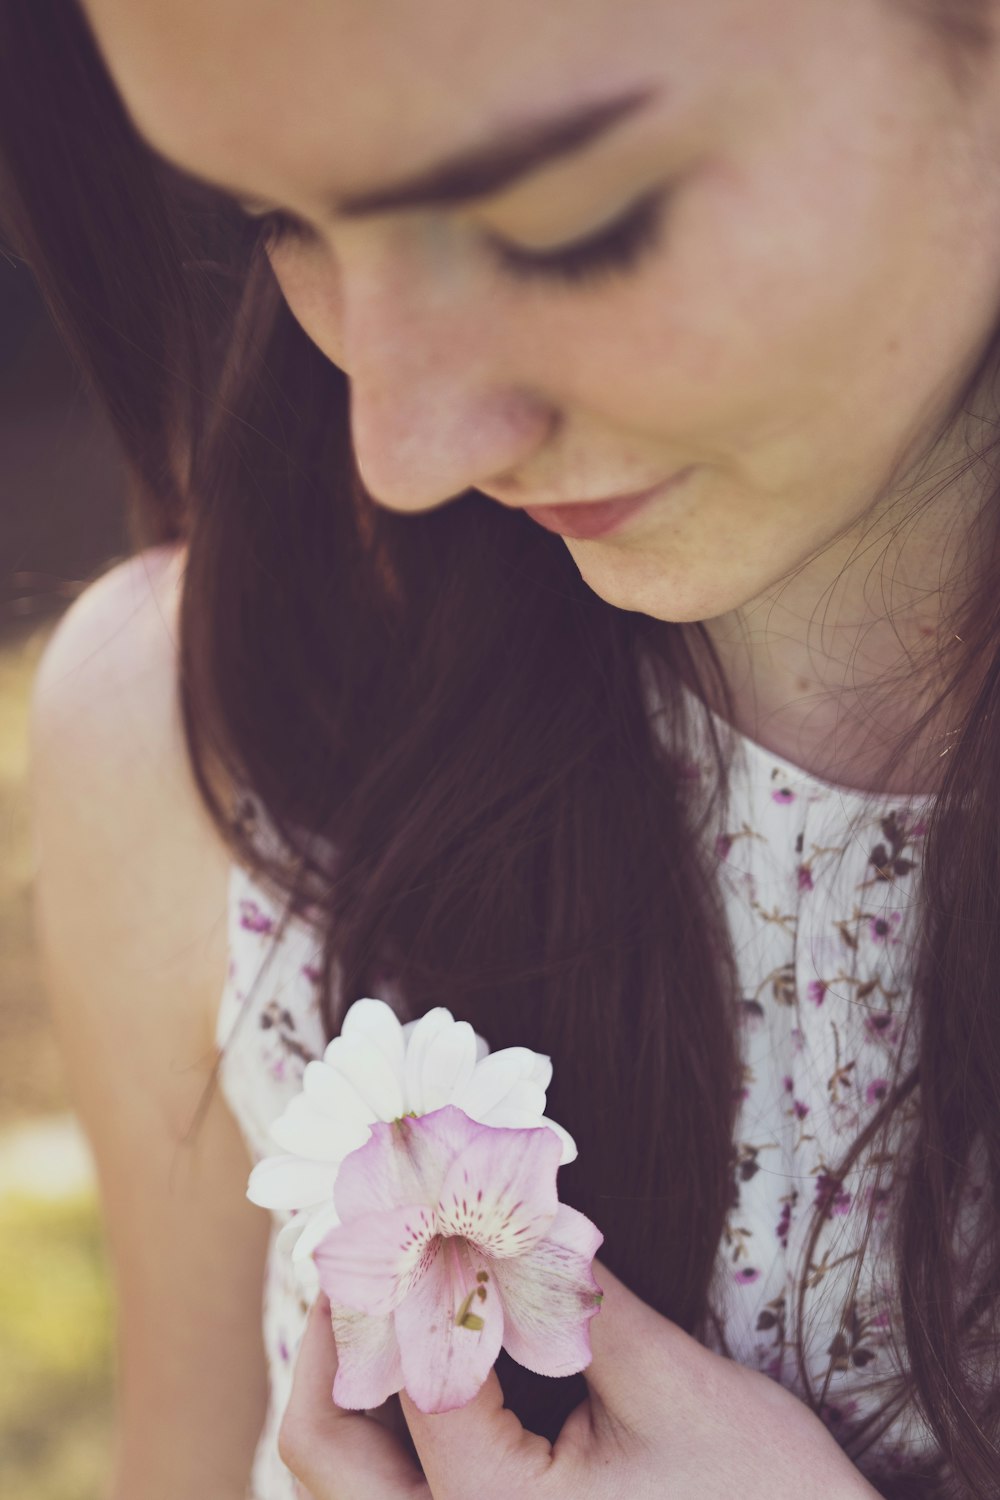 mujer sosteniendo orquídeas blancas y moradas